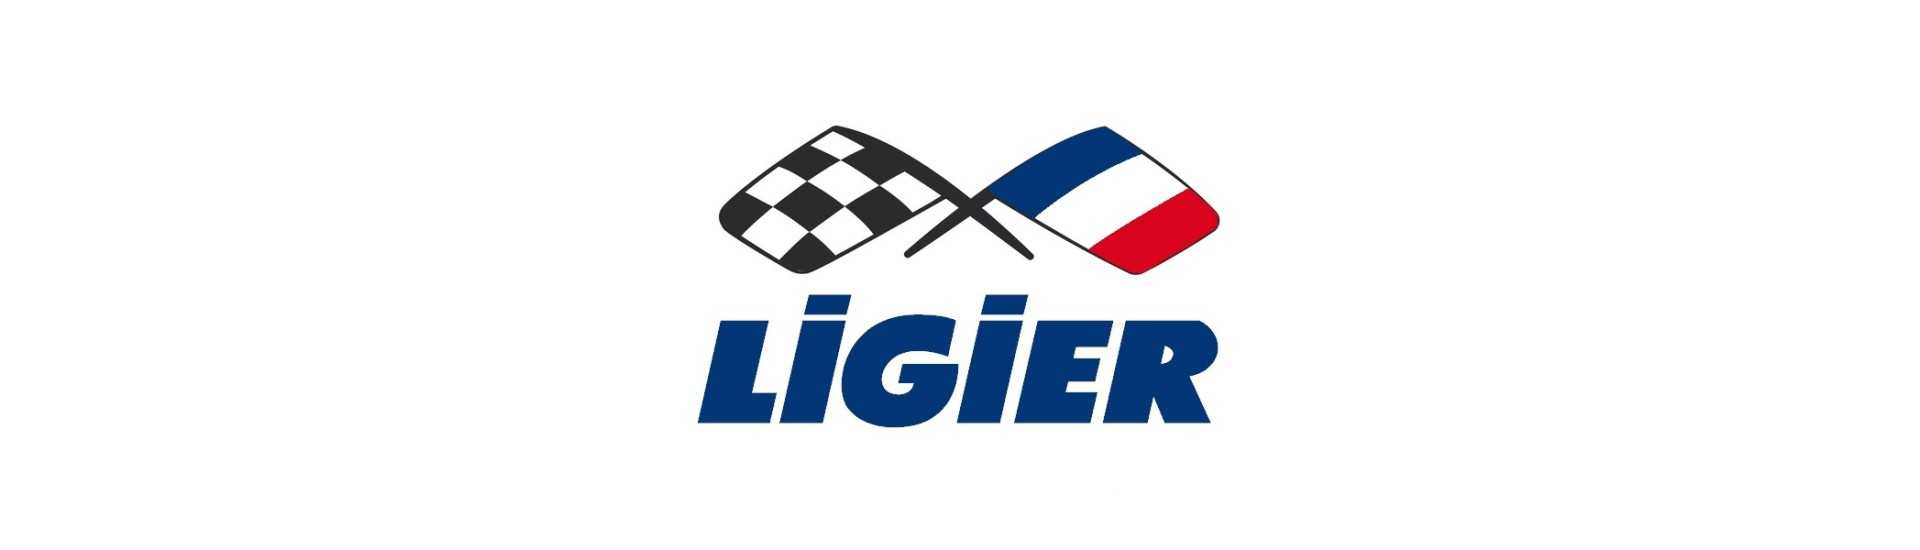 Accendino motore al miglior prezzo per auto senza permesso Ligier